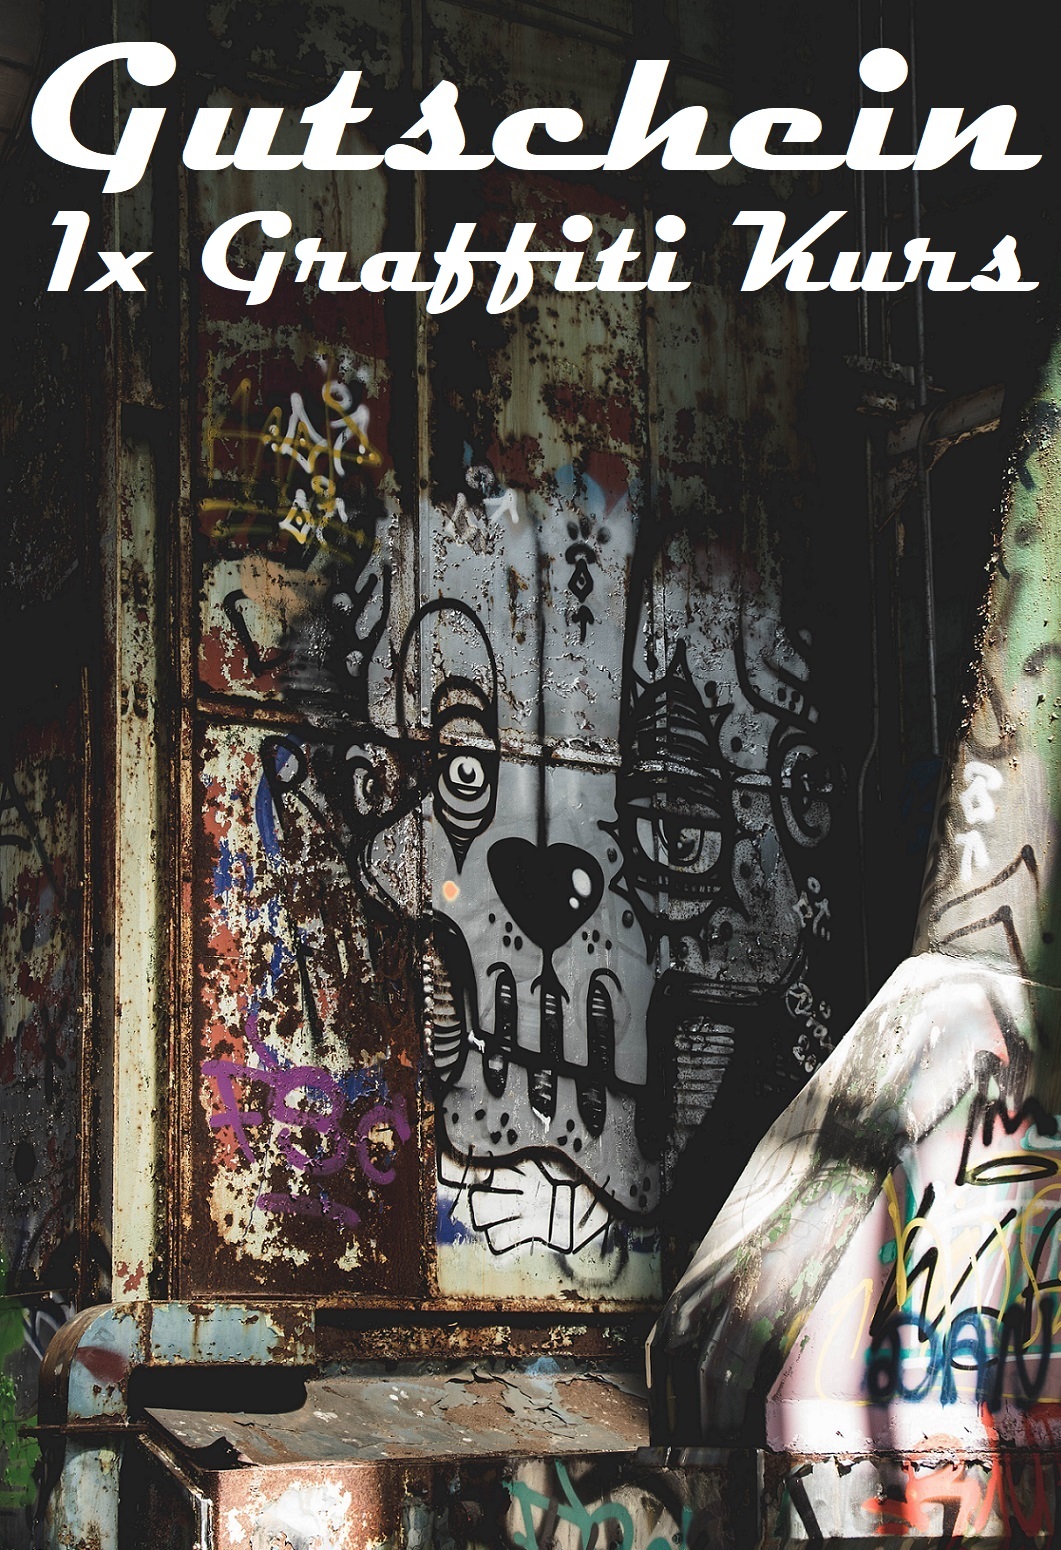 Gutscheinvorlage für Graffiti Kurse